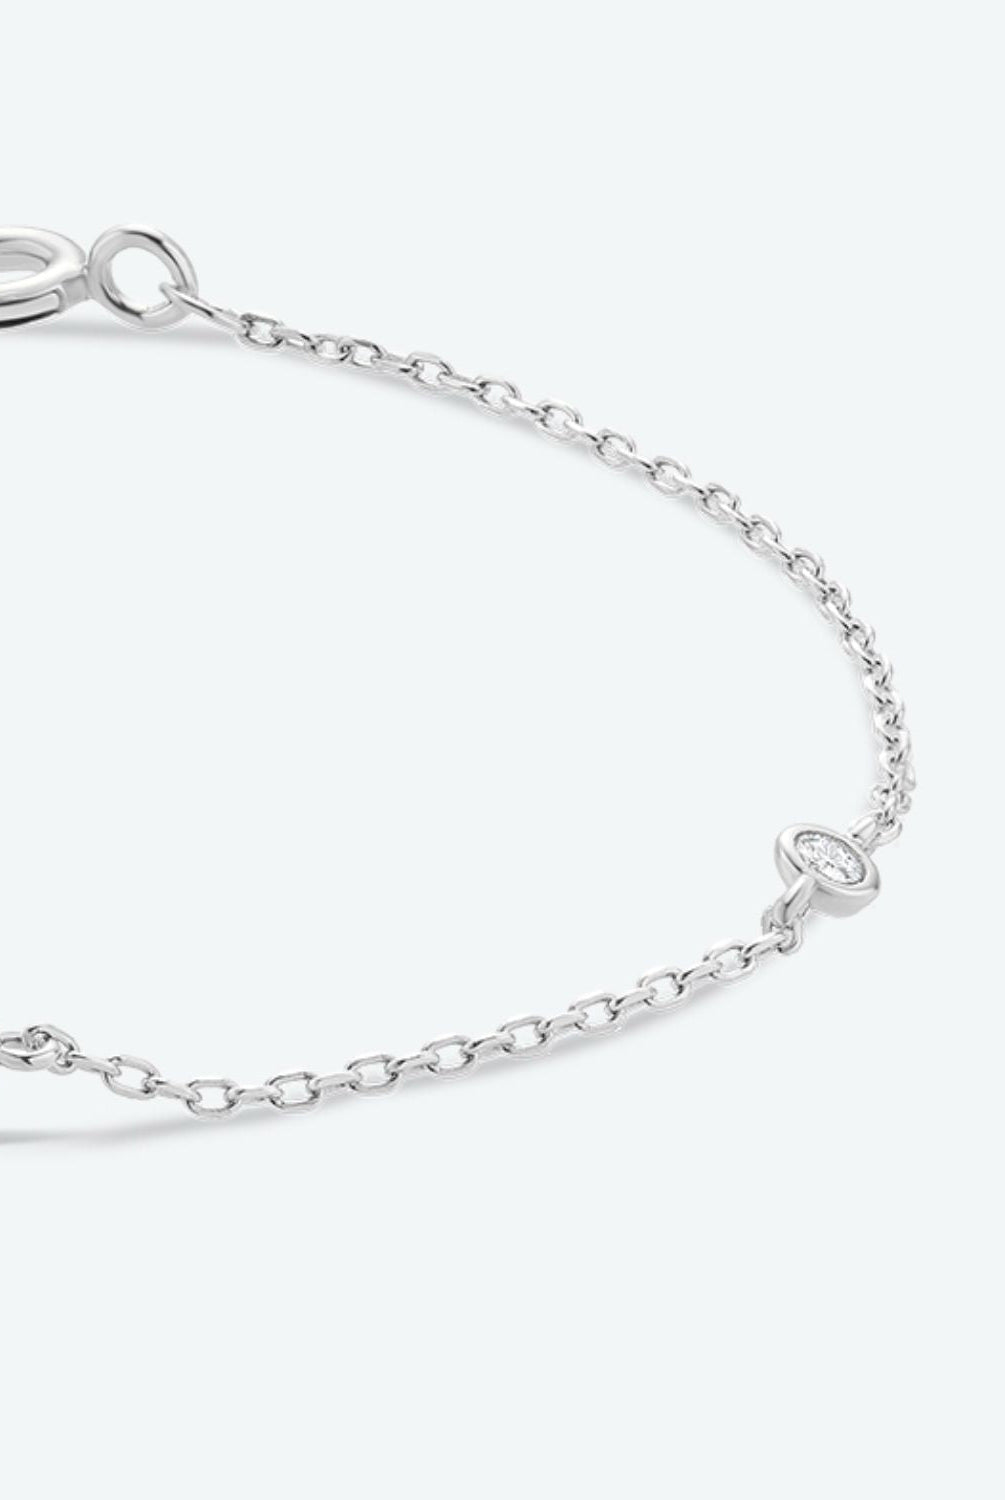 Q To U Zircon 925 Sterling Silver Bracelet - GemThreads Boutique